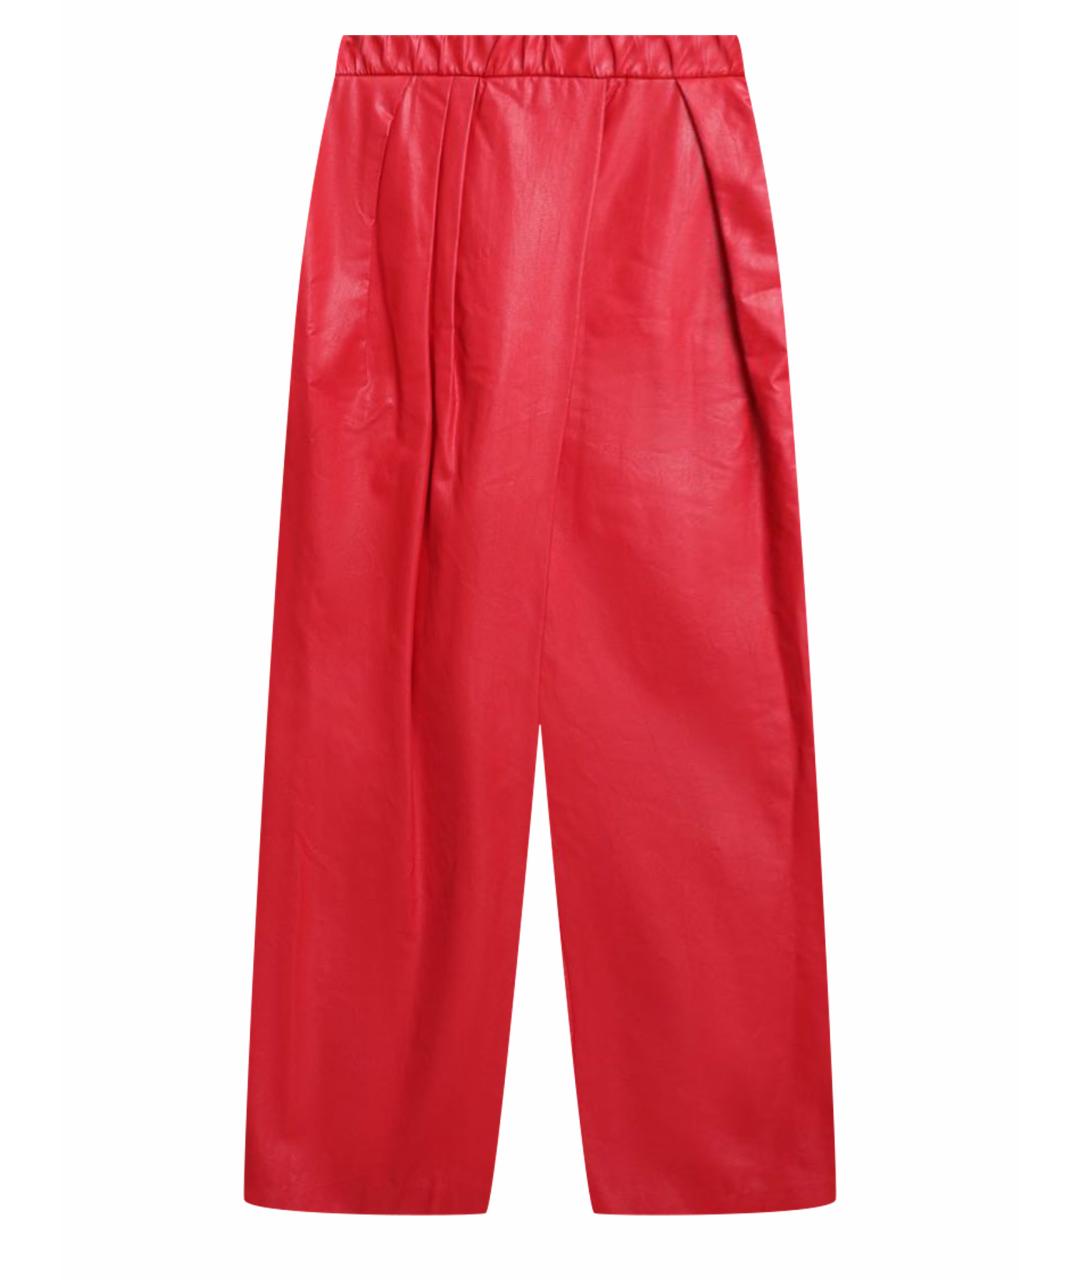 VIKA GAZINSKAYA Красные полиуретановые брюки широкие, фото 1